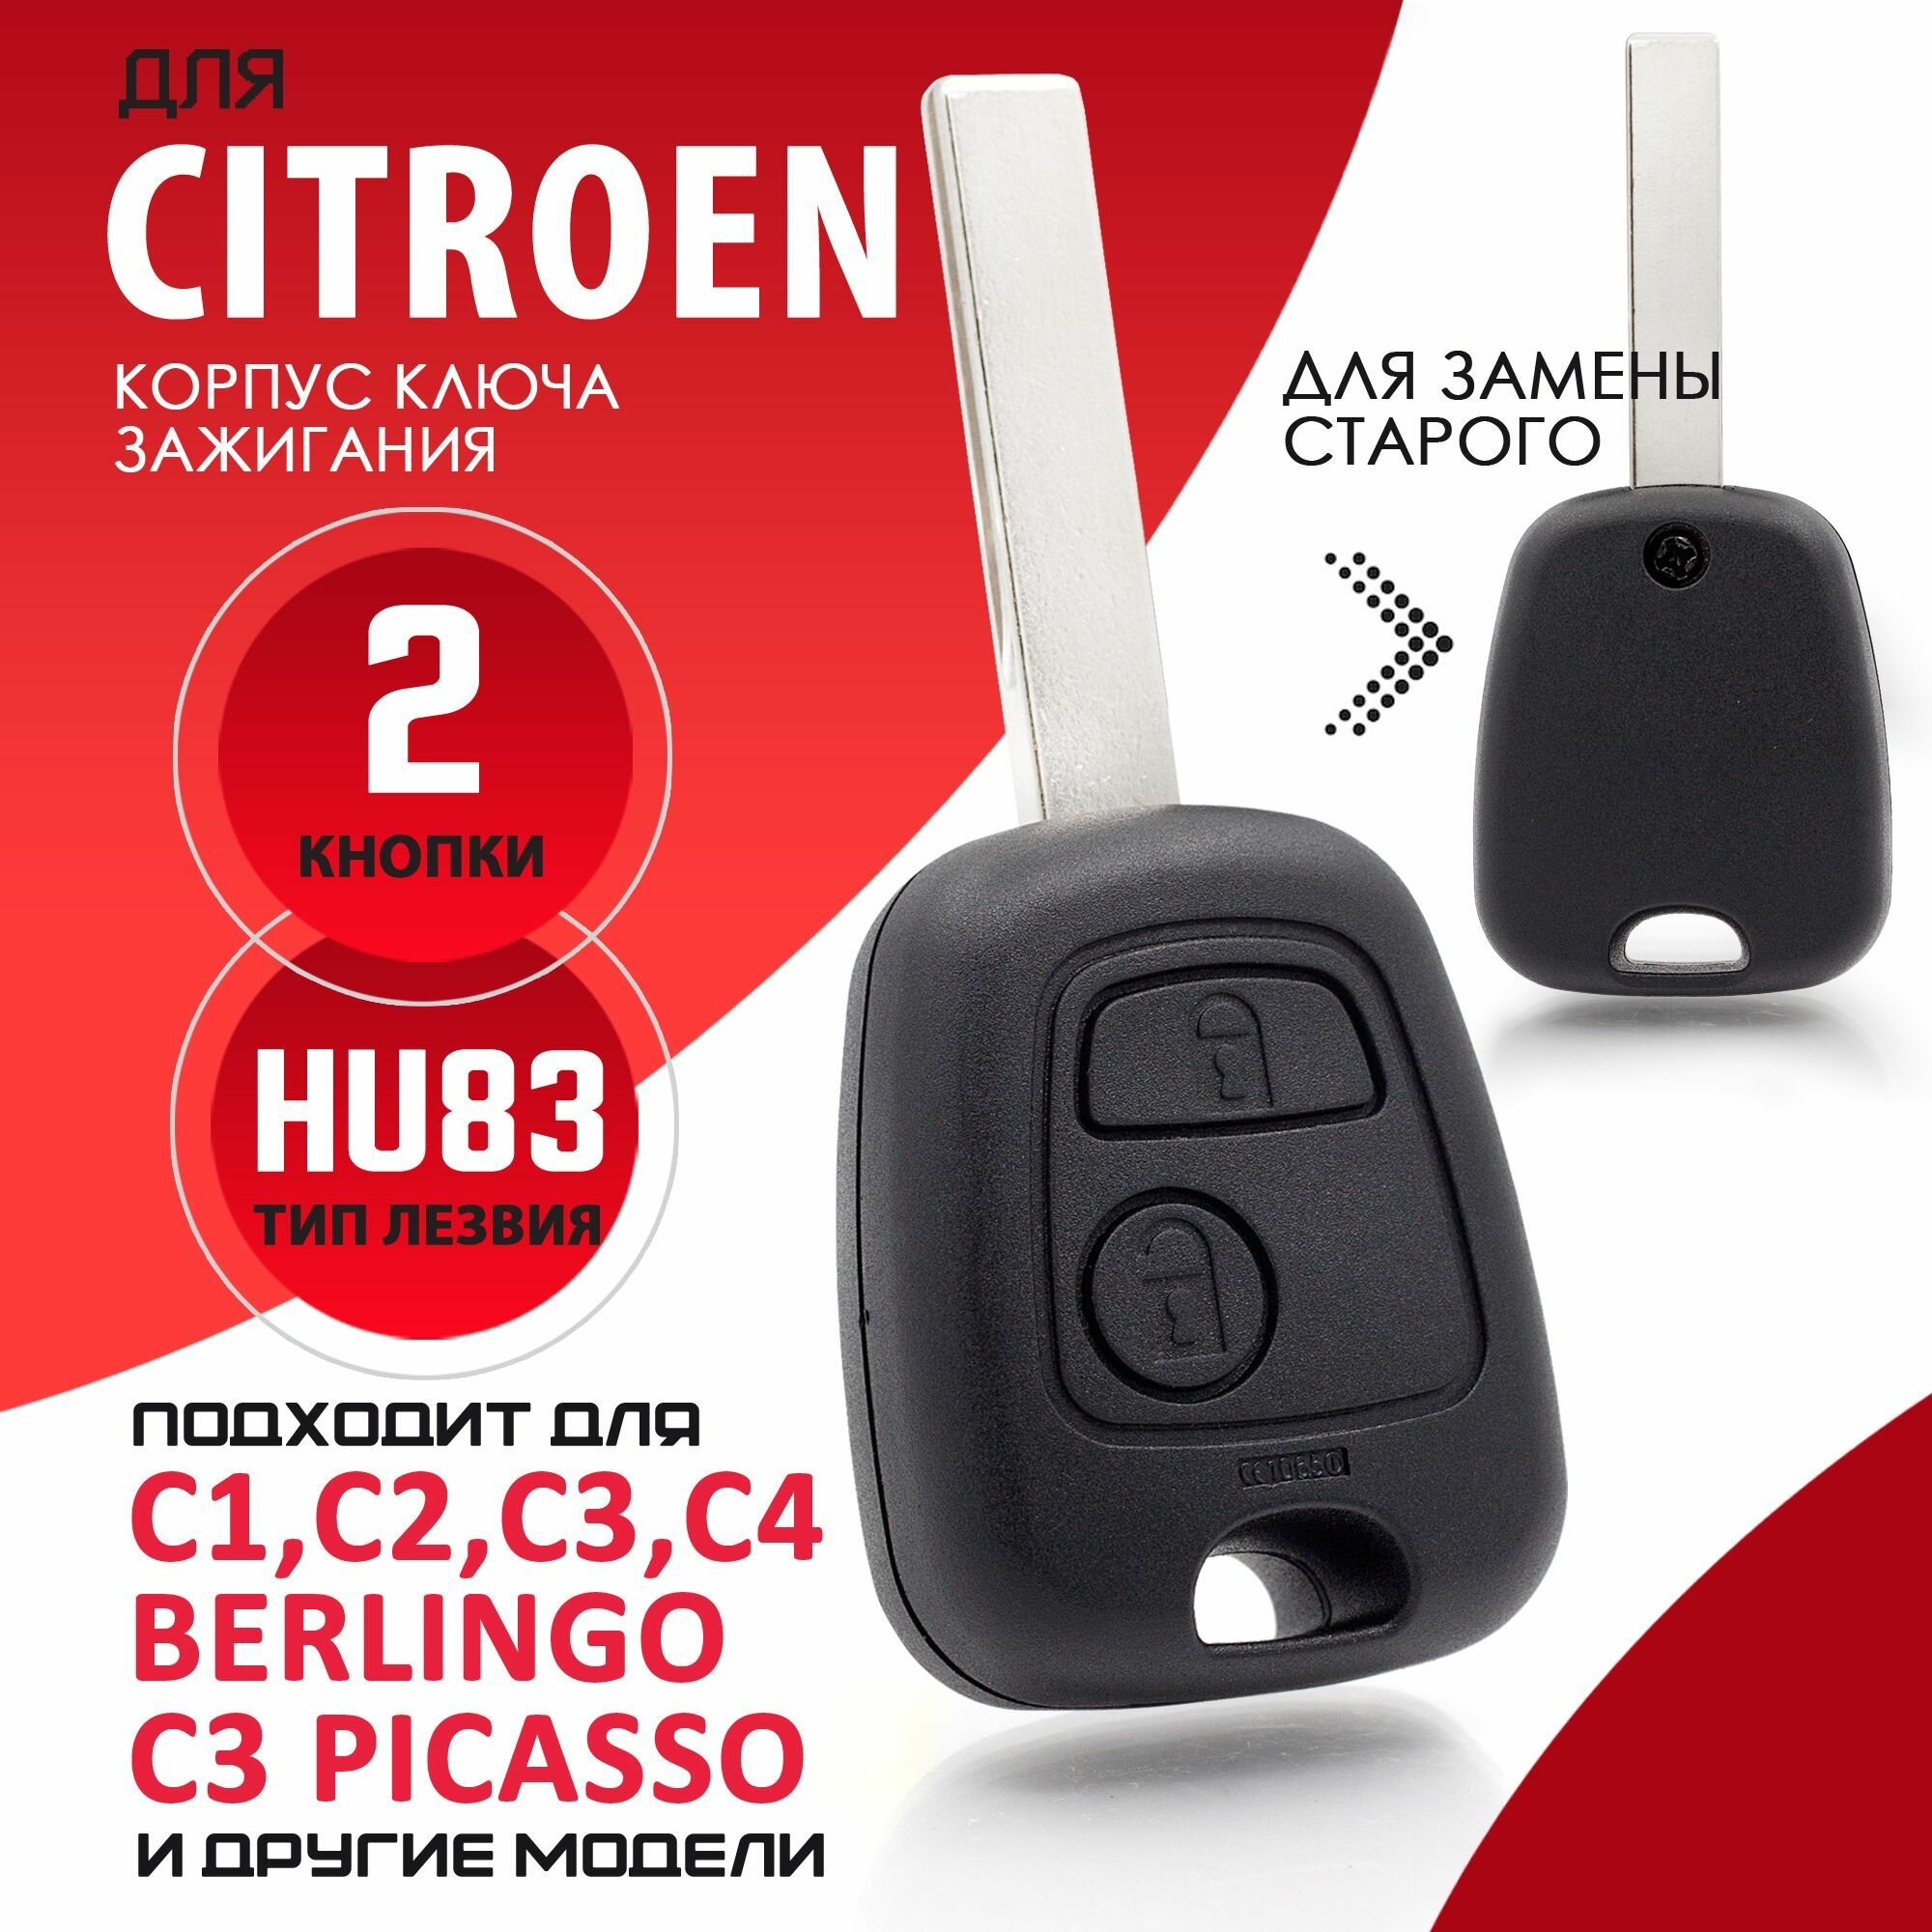 Корпус ключа зажигания Citroen C1 C2 C3 C4 XSARA Picasso - 1 штука (2х кнопочный ключ, лезвие HU83)